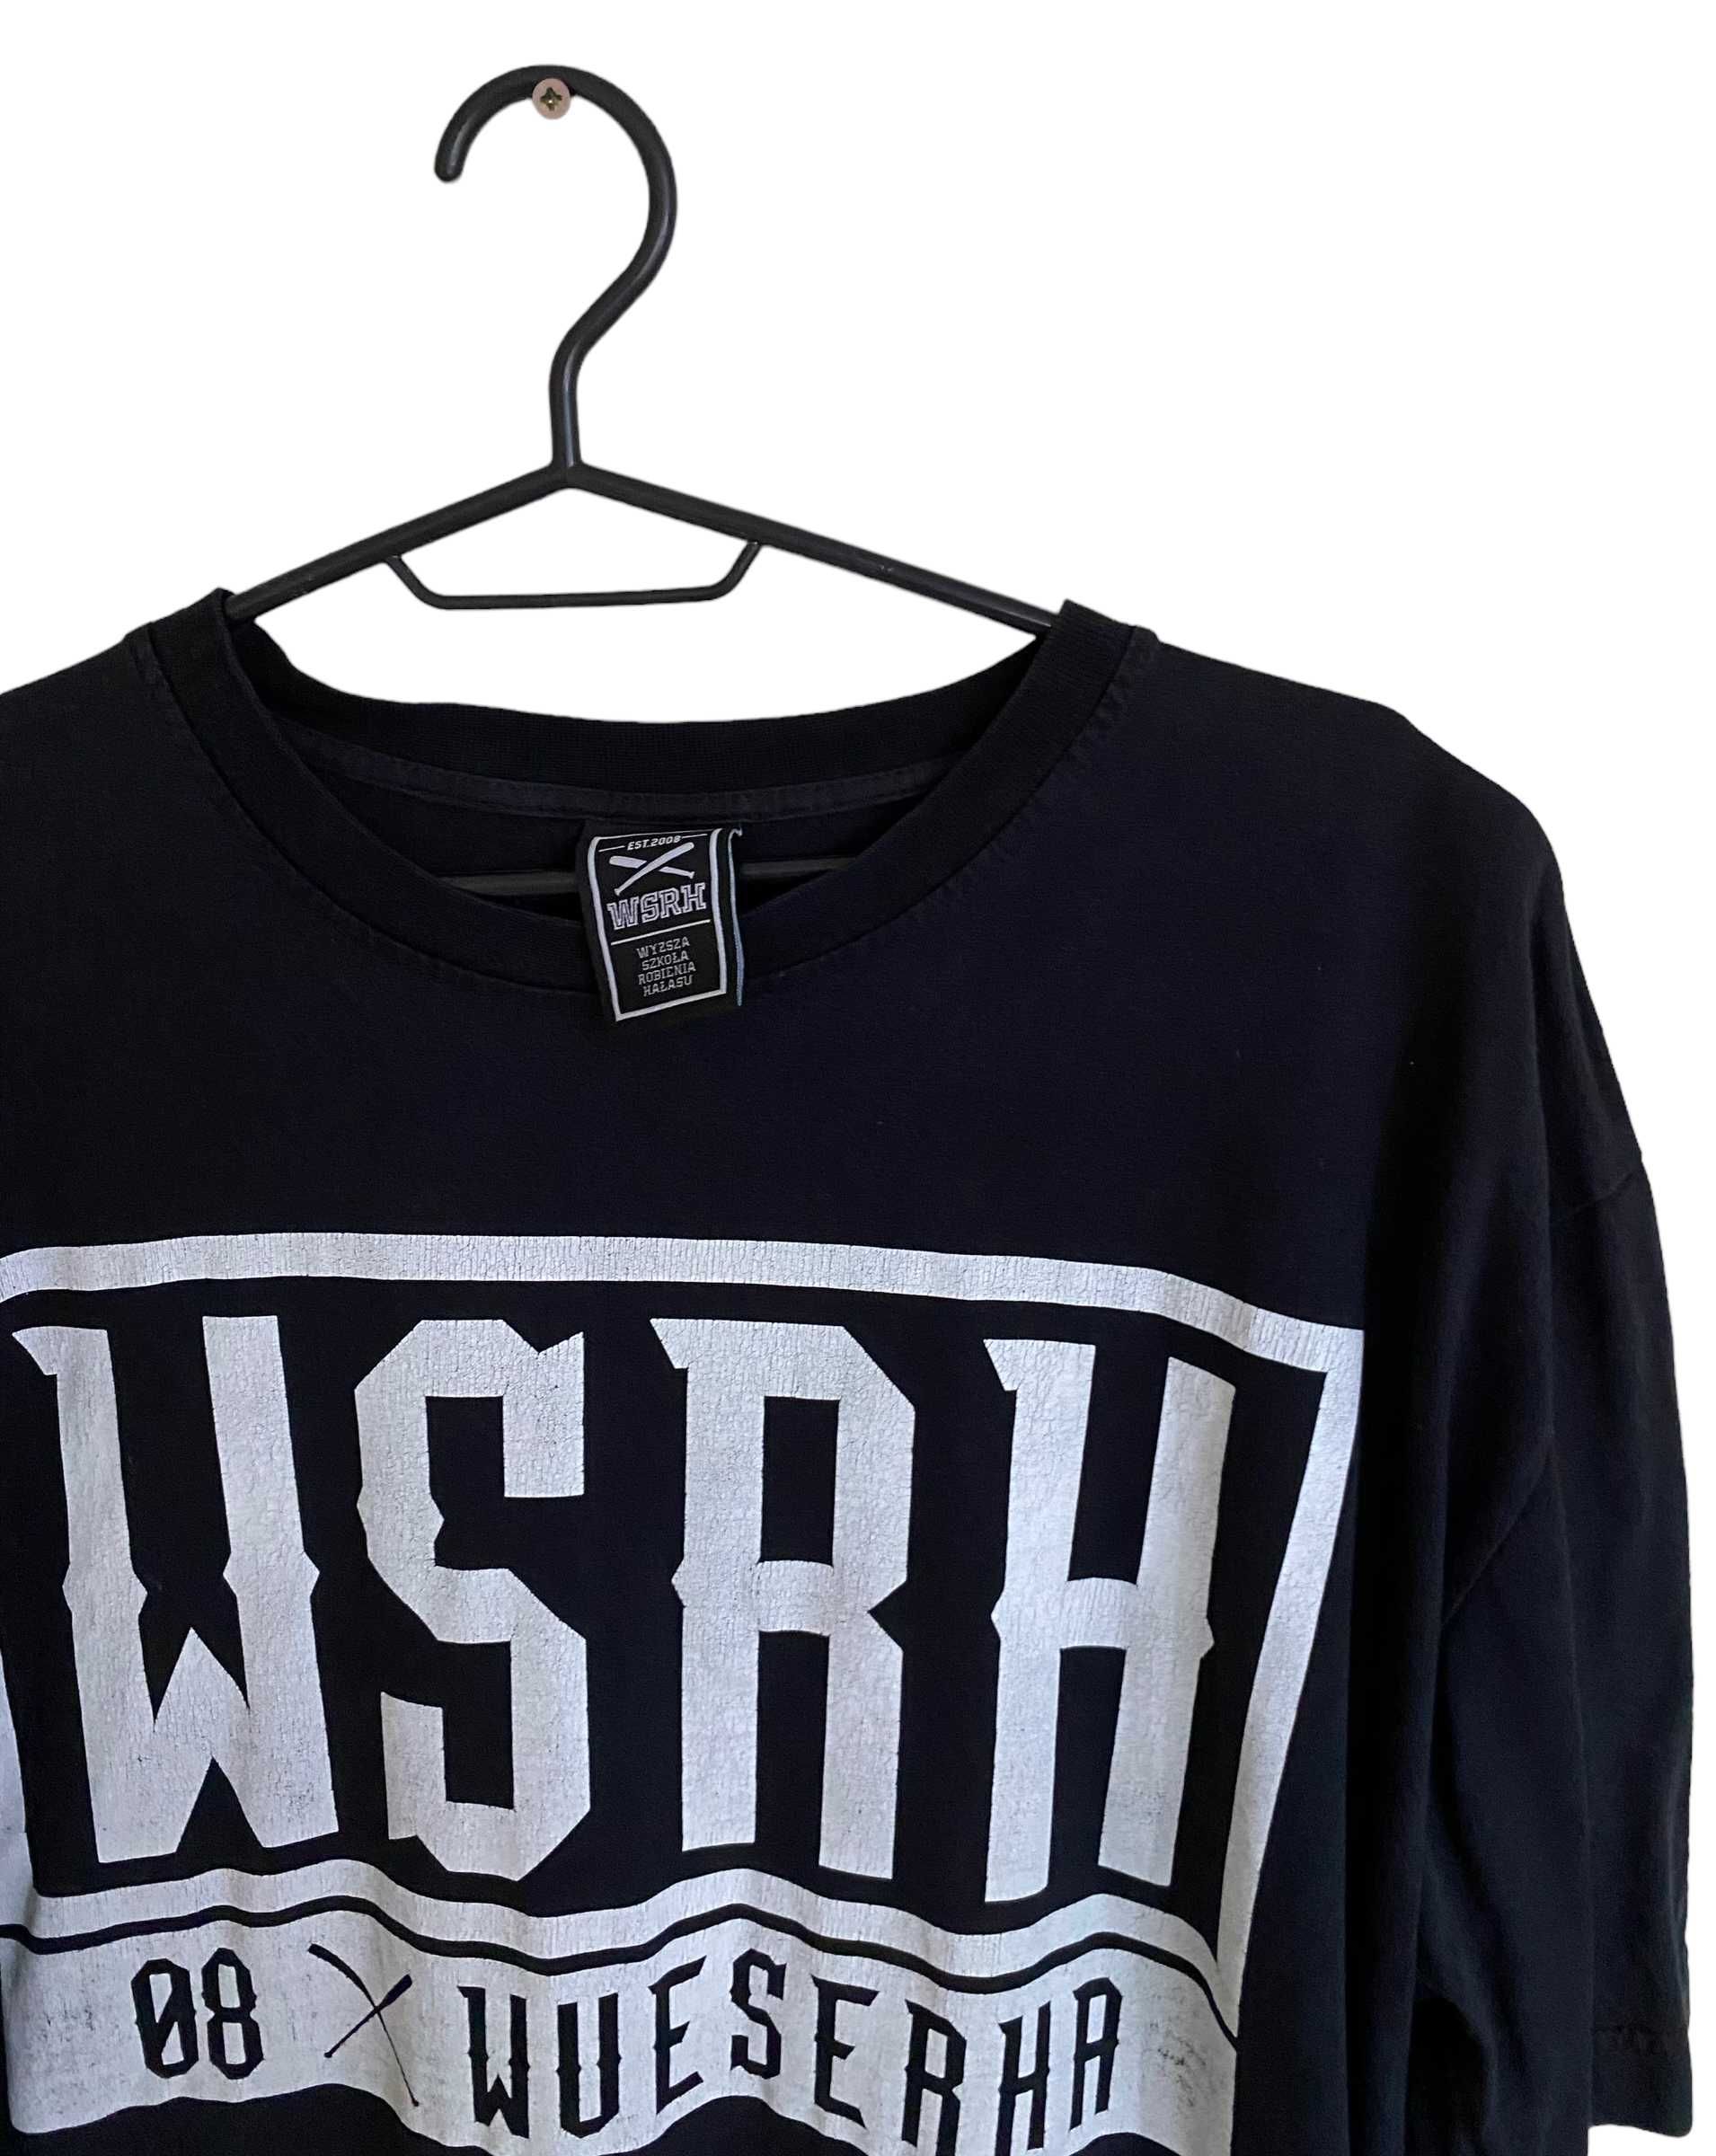 WSRH t-shirt, rozmiar XXL, stan dobry